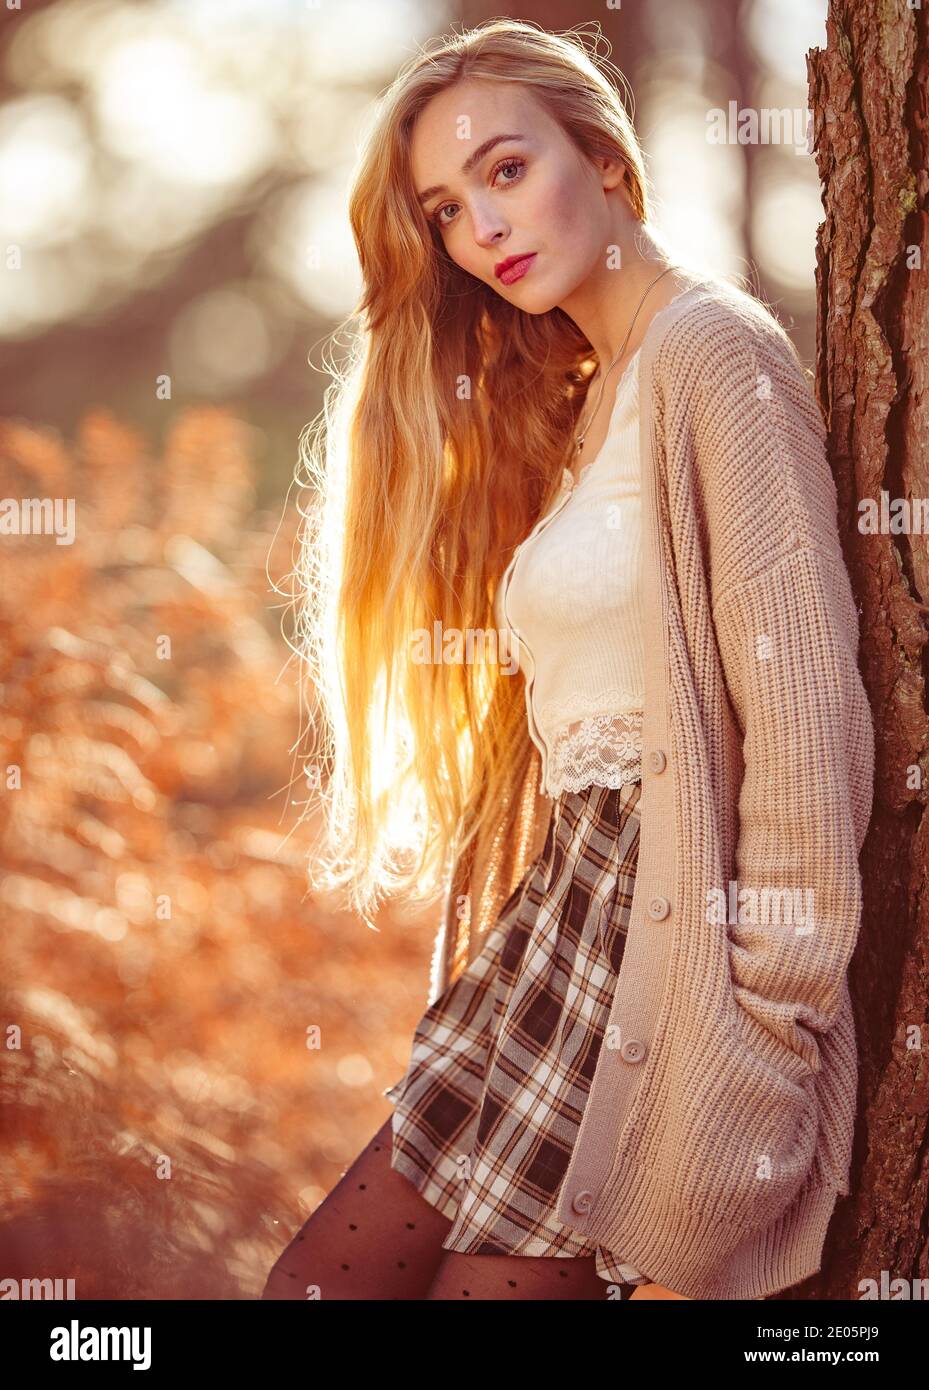 Eine junge natürlich schöne Frau mit langen blonden Haaren trägt eine Strickjacke in einem redaktionellen Mode Bild im Wald mit herbstlichen Orange Farben aufgenommen. Stockfoto